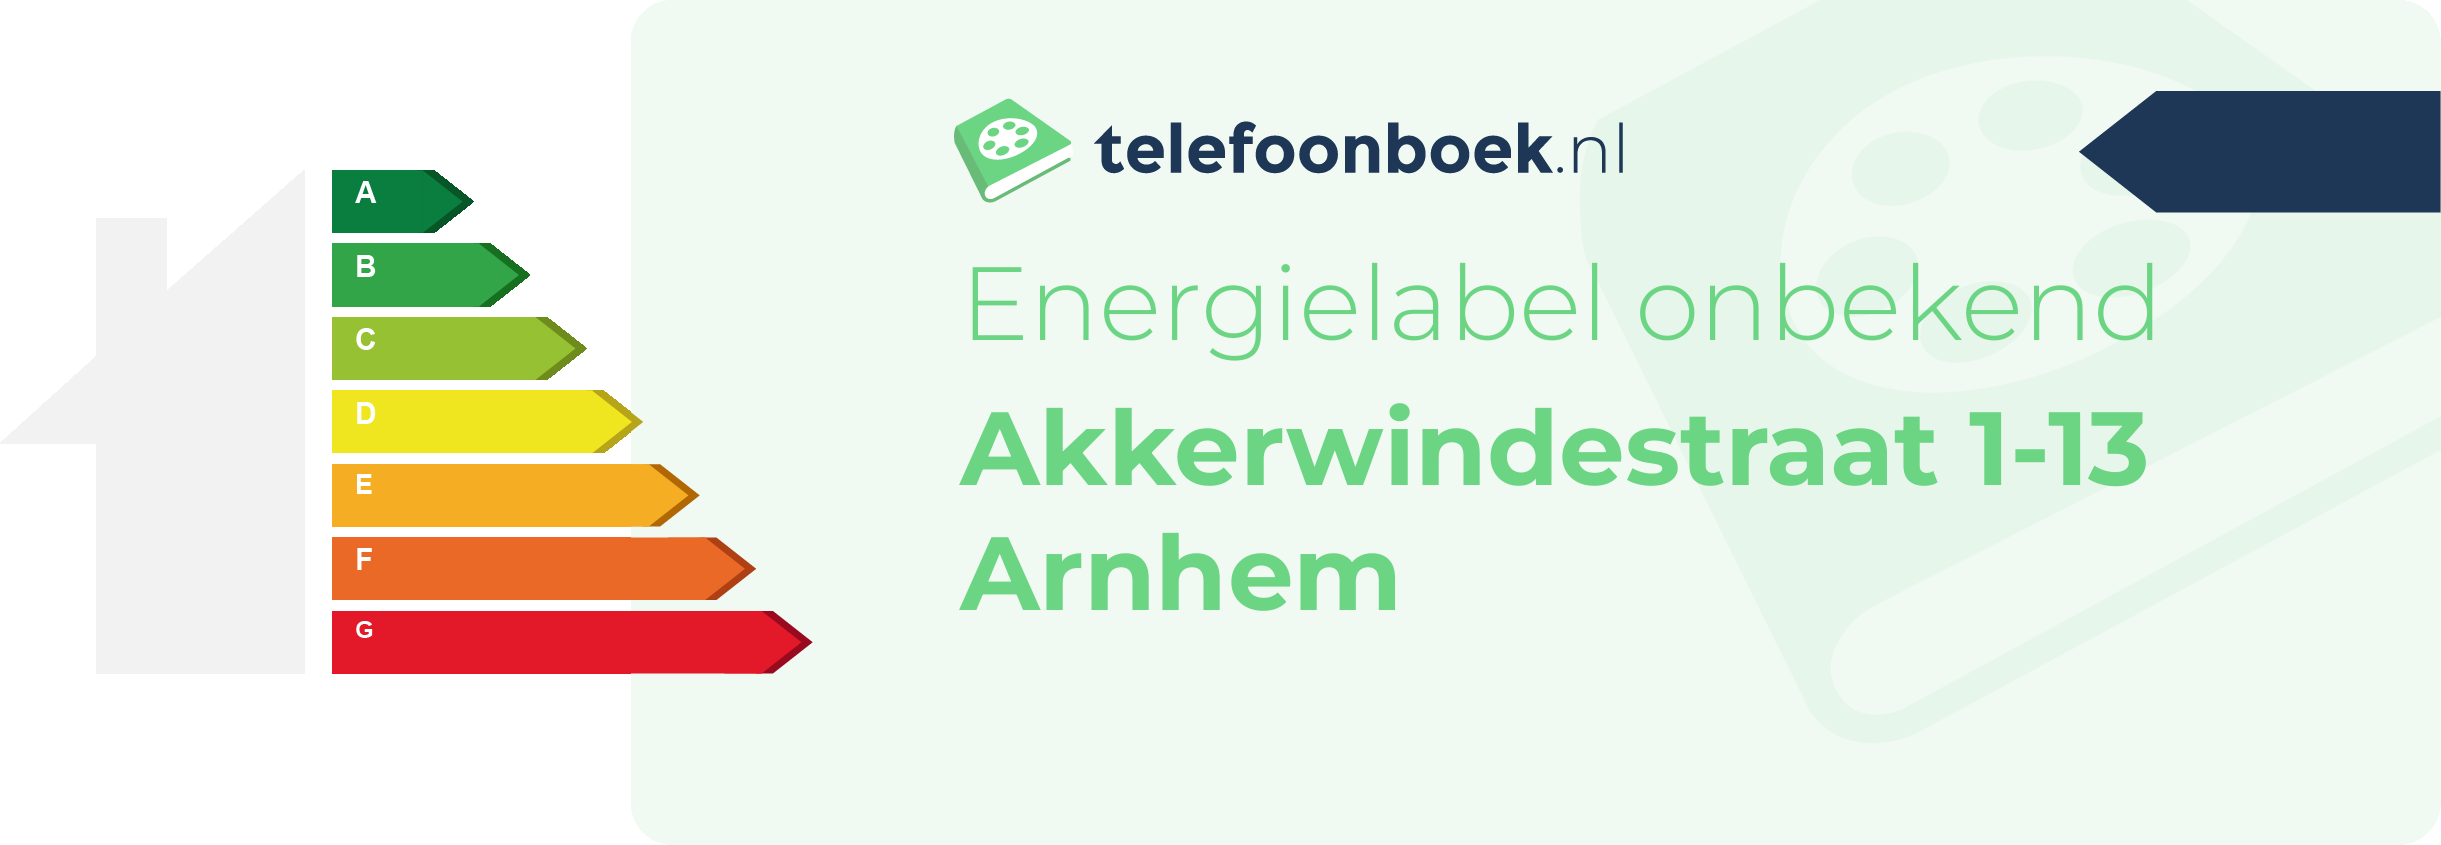 Energielabel Akkerwindestraat 1-13 Arnhem